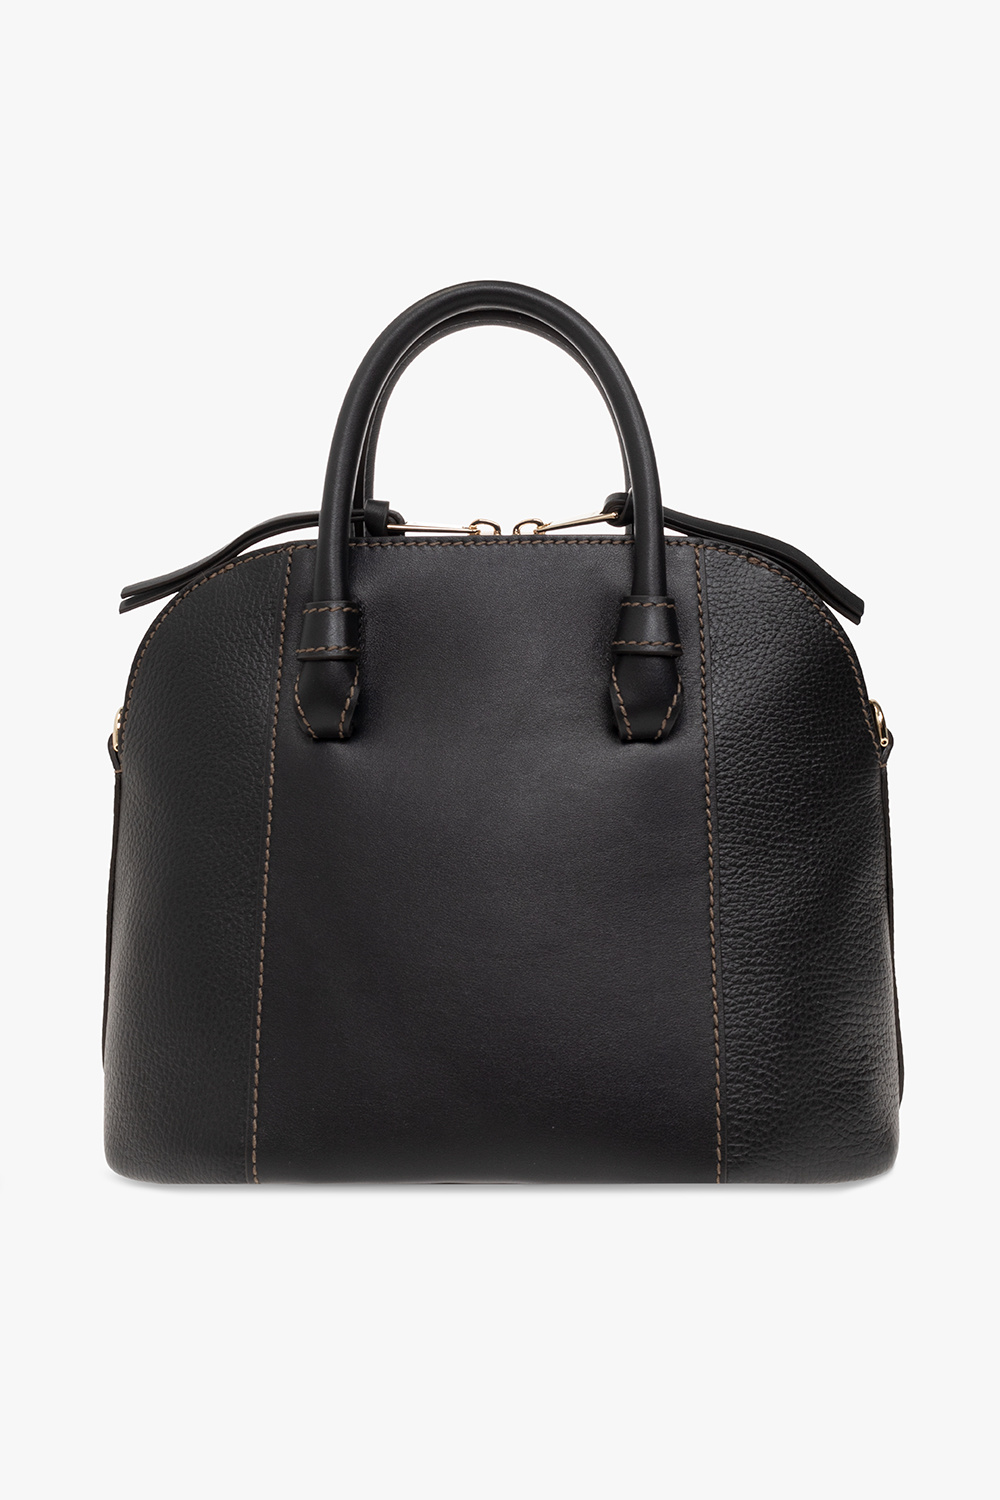 Furla ‘Miastella Small’ shoulder BYU bag